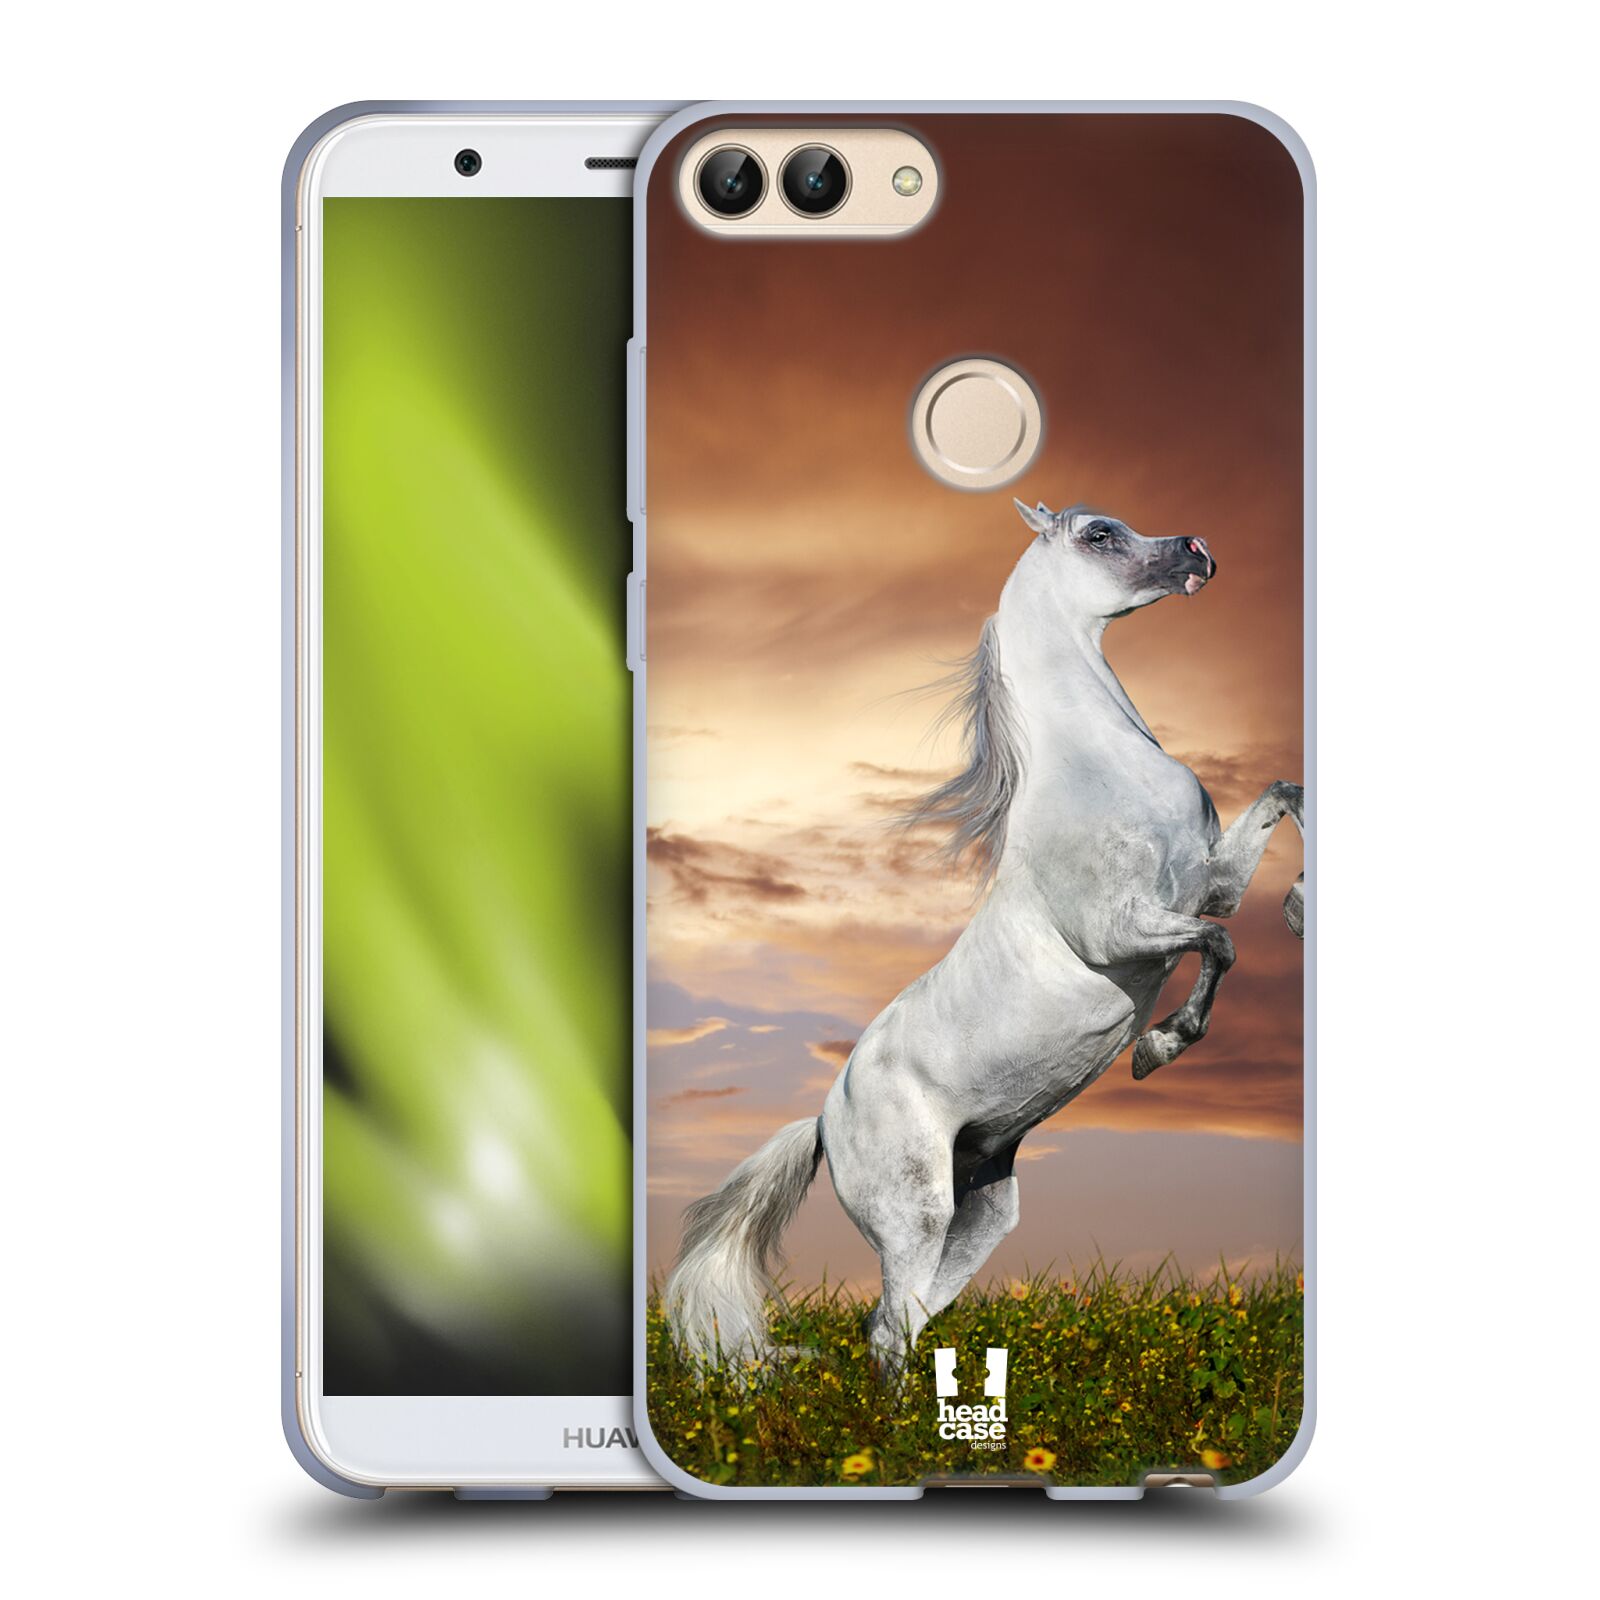 HEAD CASE silikon obal na mobil Huawei P SMART vzor Divočina, Divoký život a zvířata foto DIVOKÝ KŮŇ MUSTANG BÍLÁ